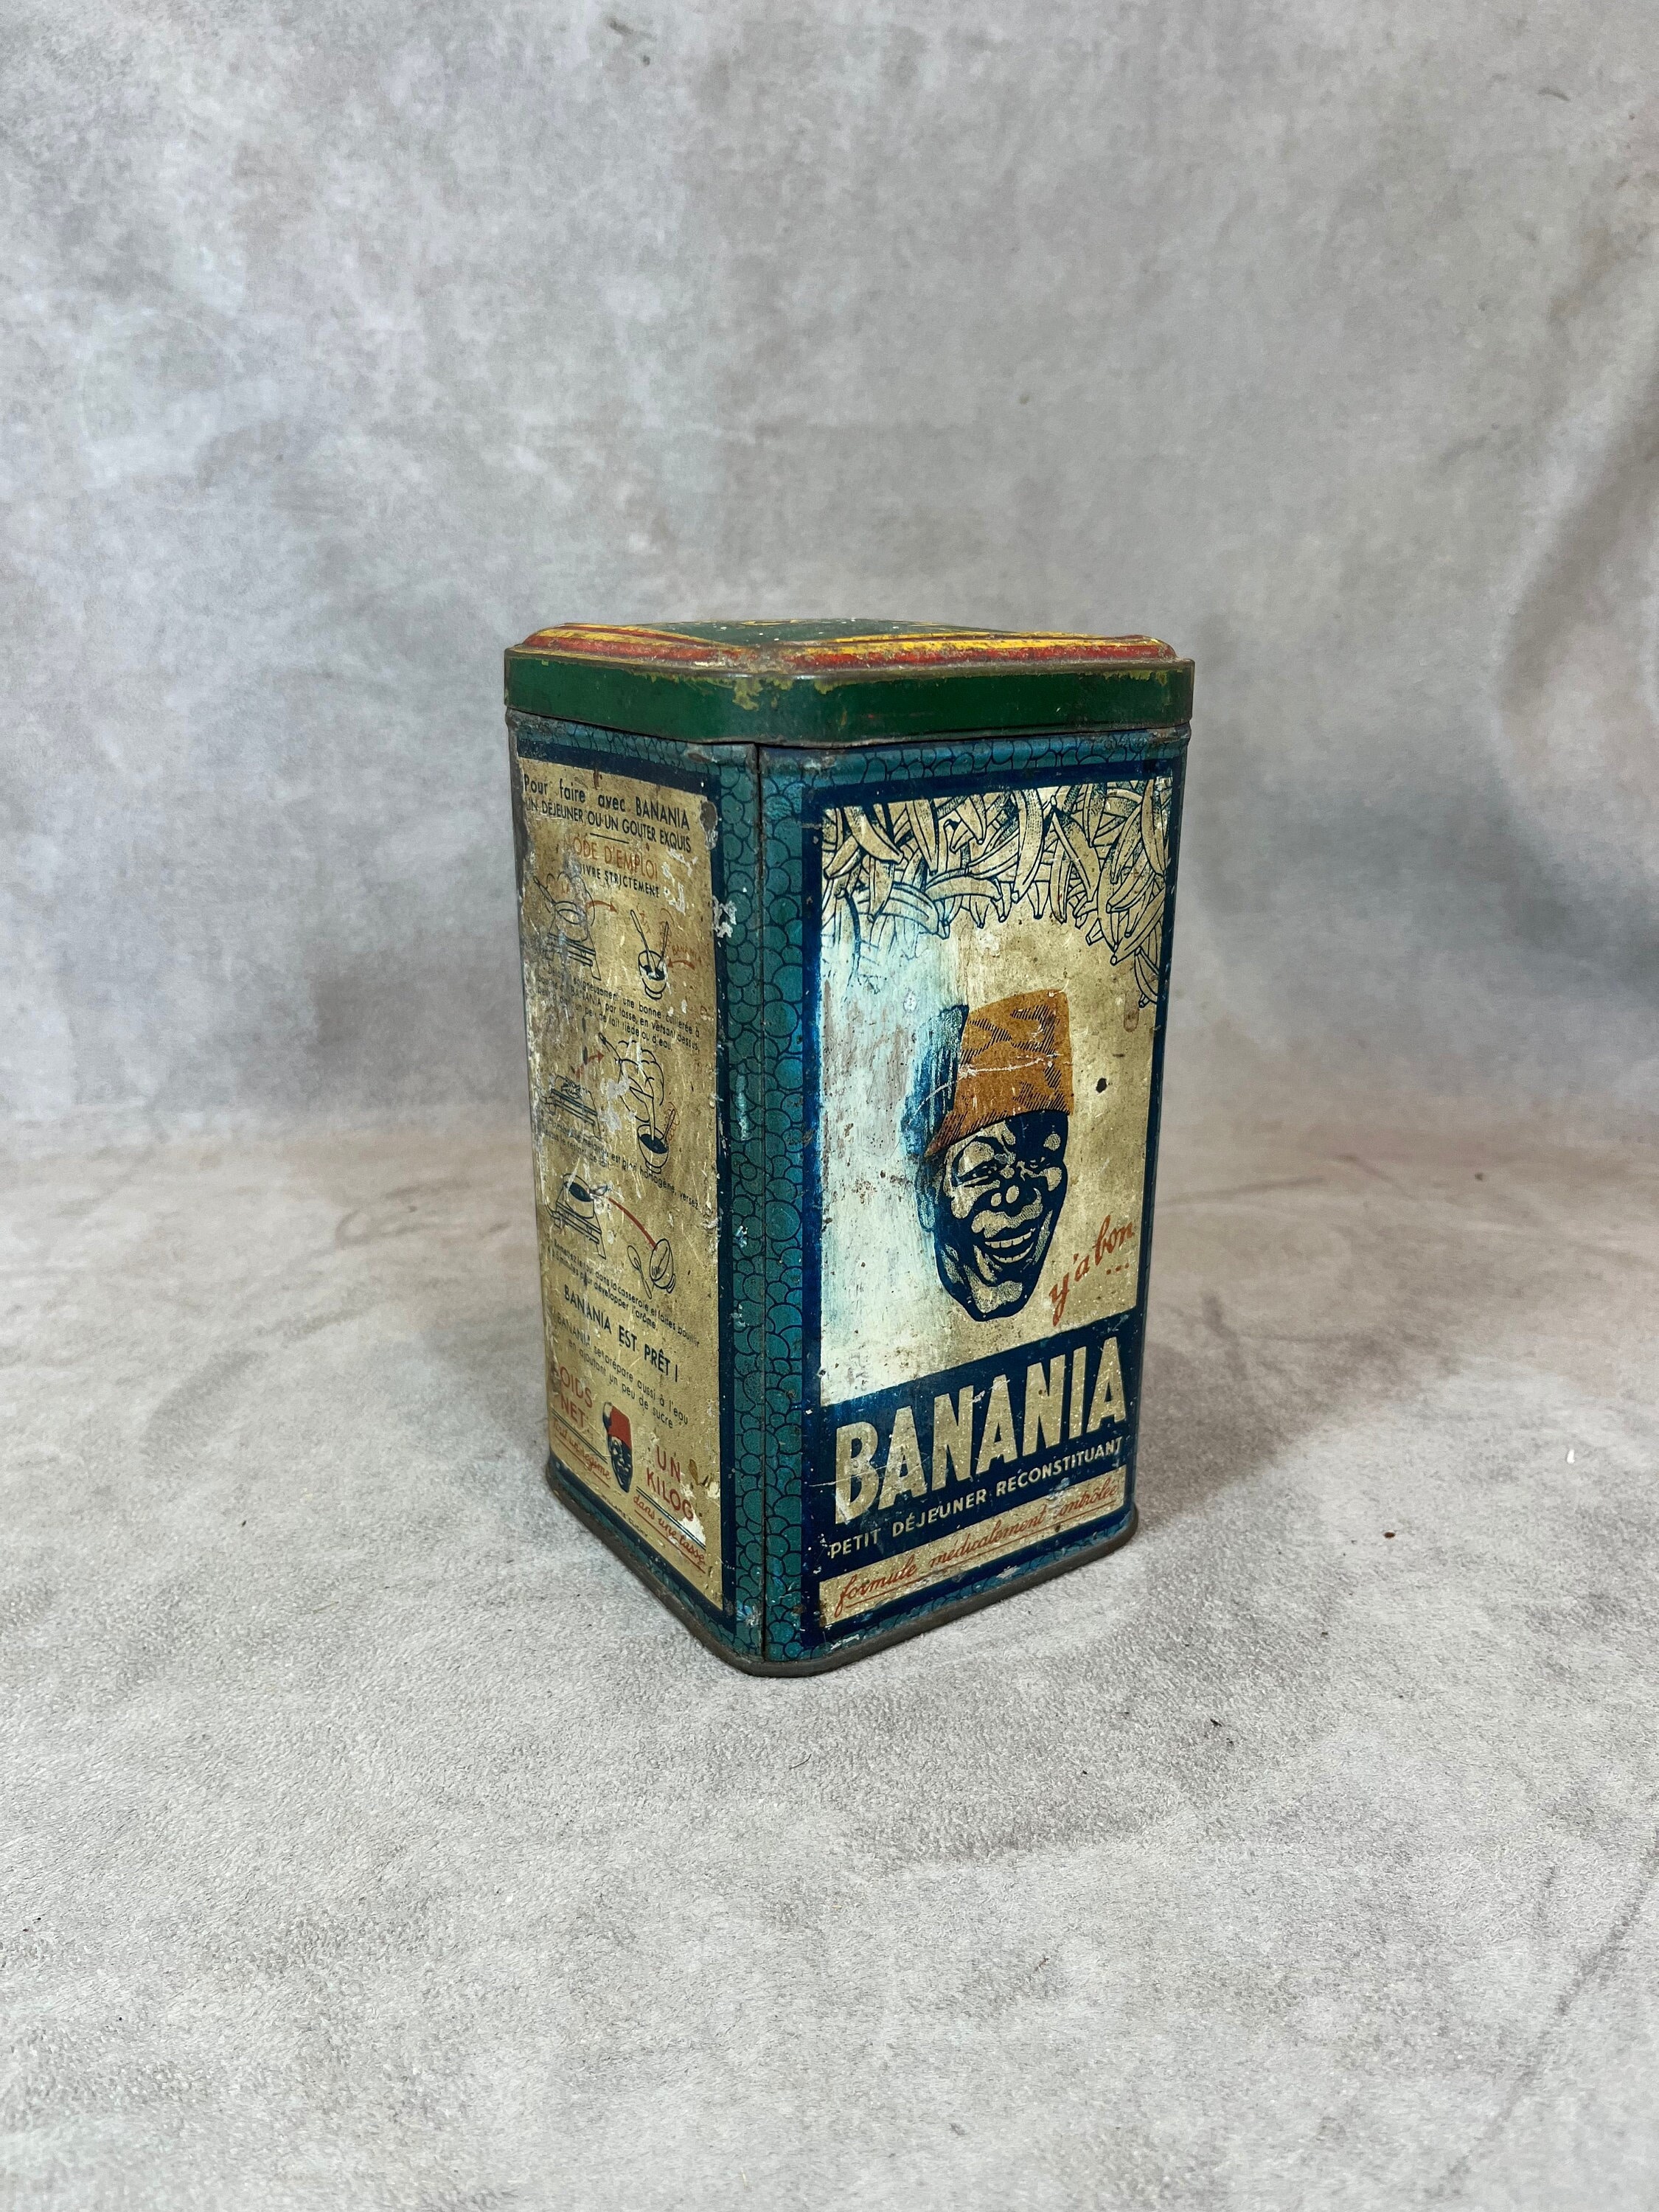 Nouveau packaging pour Banania